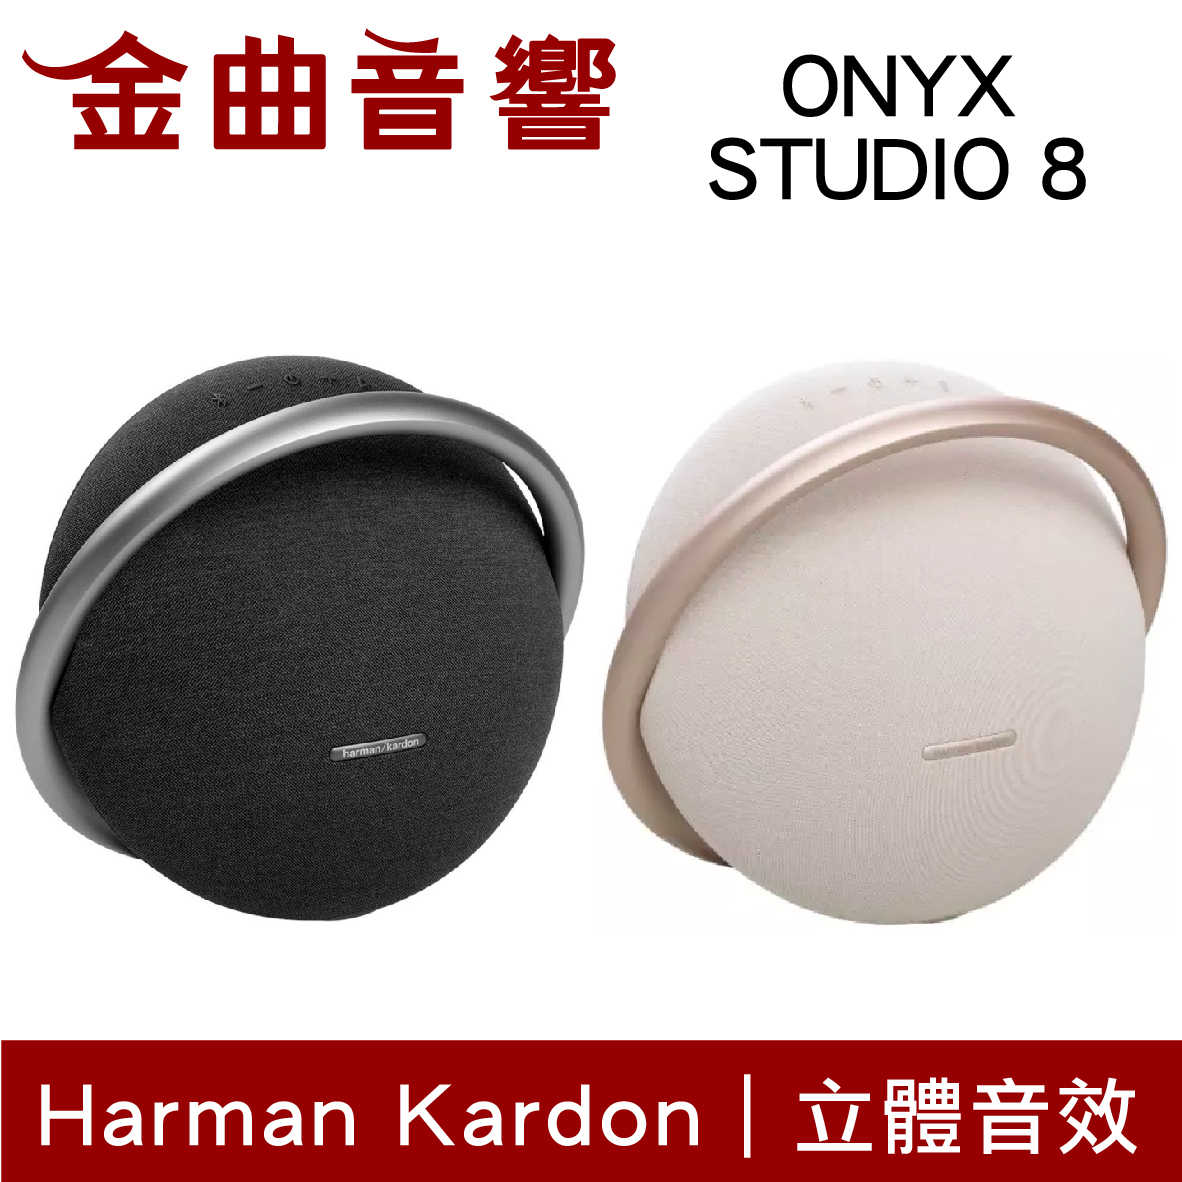 Harman Kardon ONYX STUDIO 8 無線串流 免提通話 可攜式 藍牙喇叭 | 金曲音響